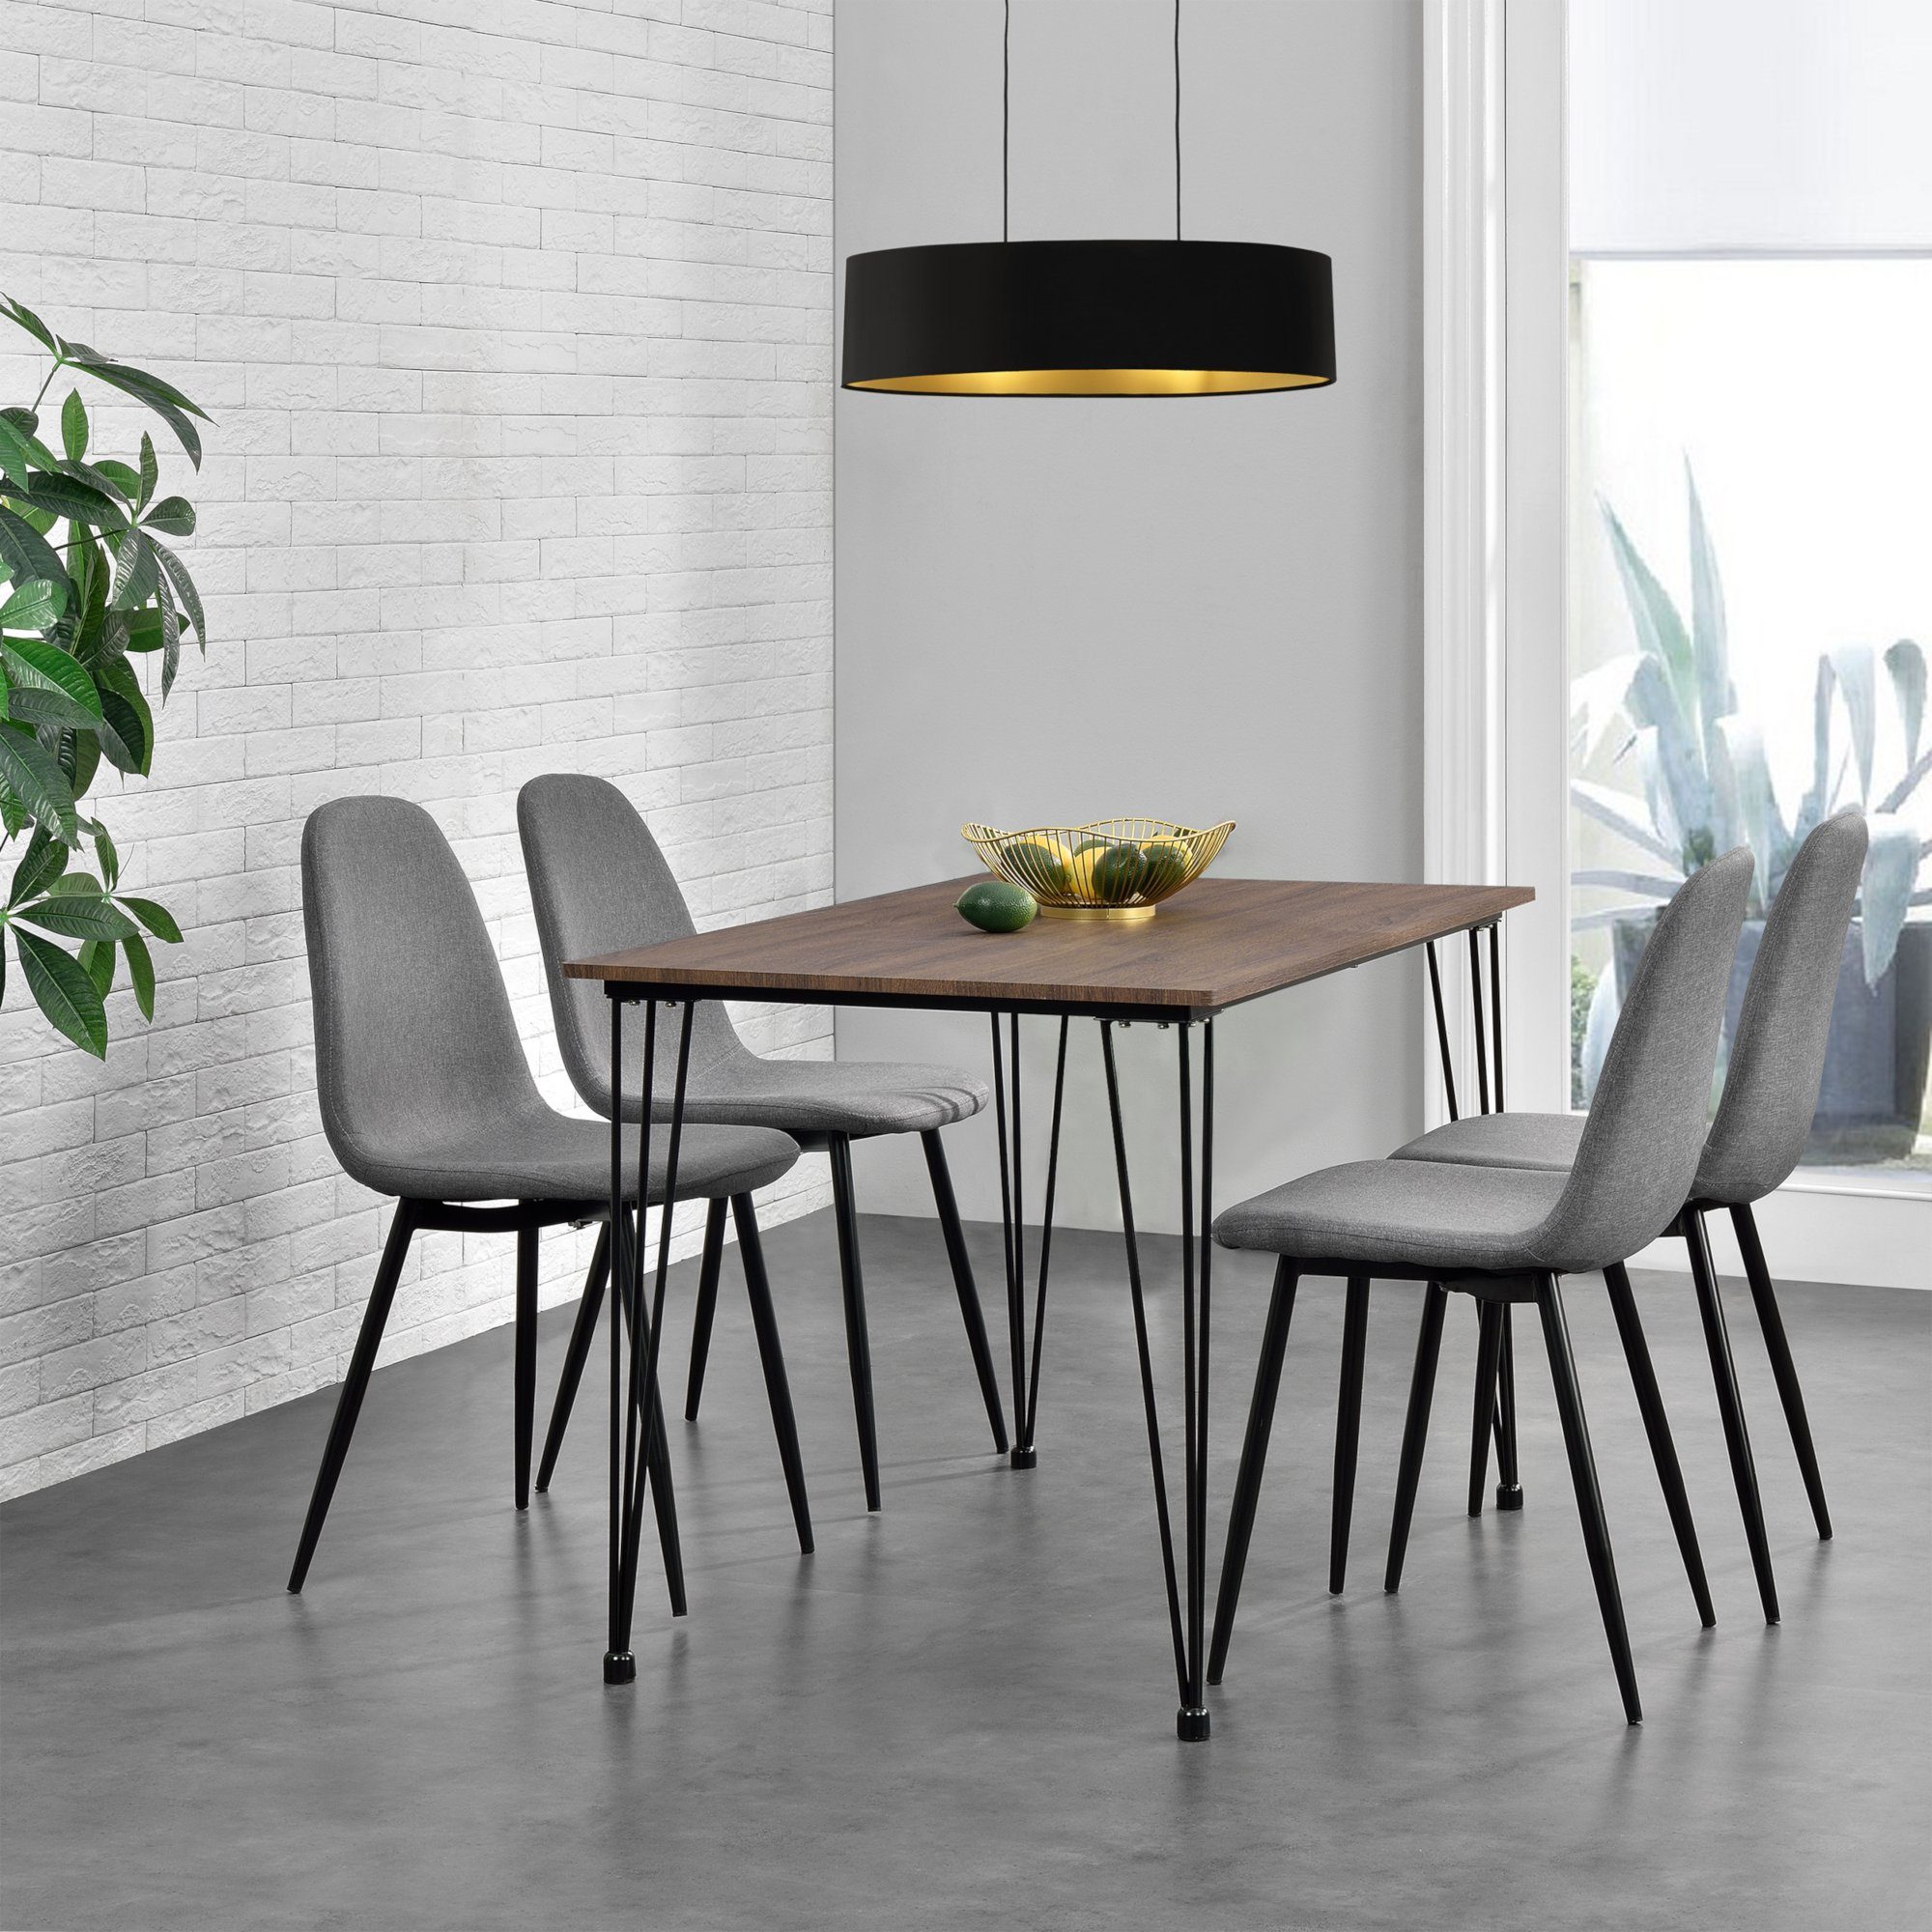 ® Esstisch mit 4 Stühlen weiß 120x70cm Küchentisch Esszimmertisch Tisch en.casa 